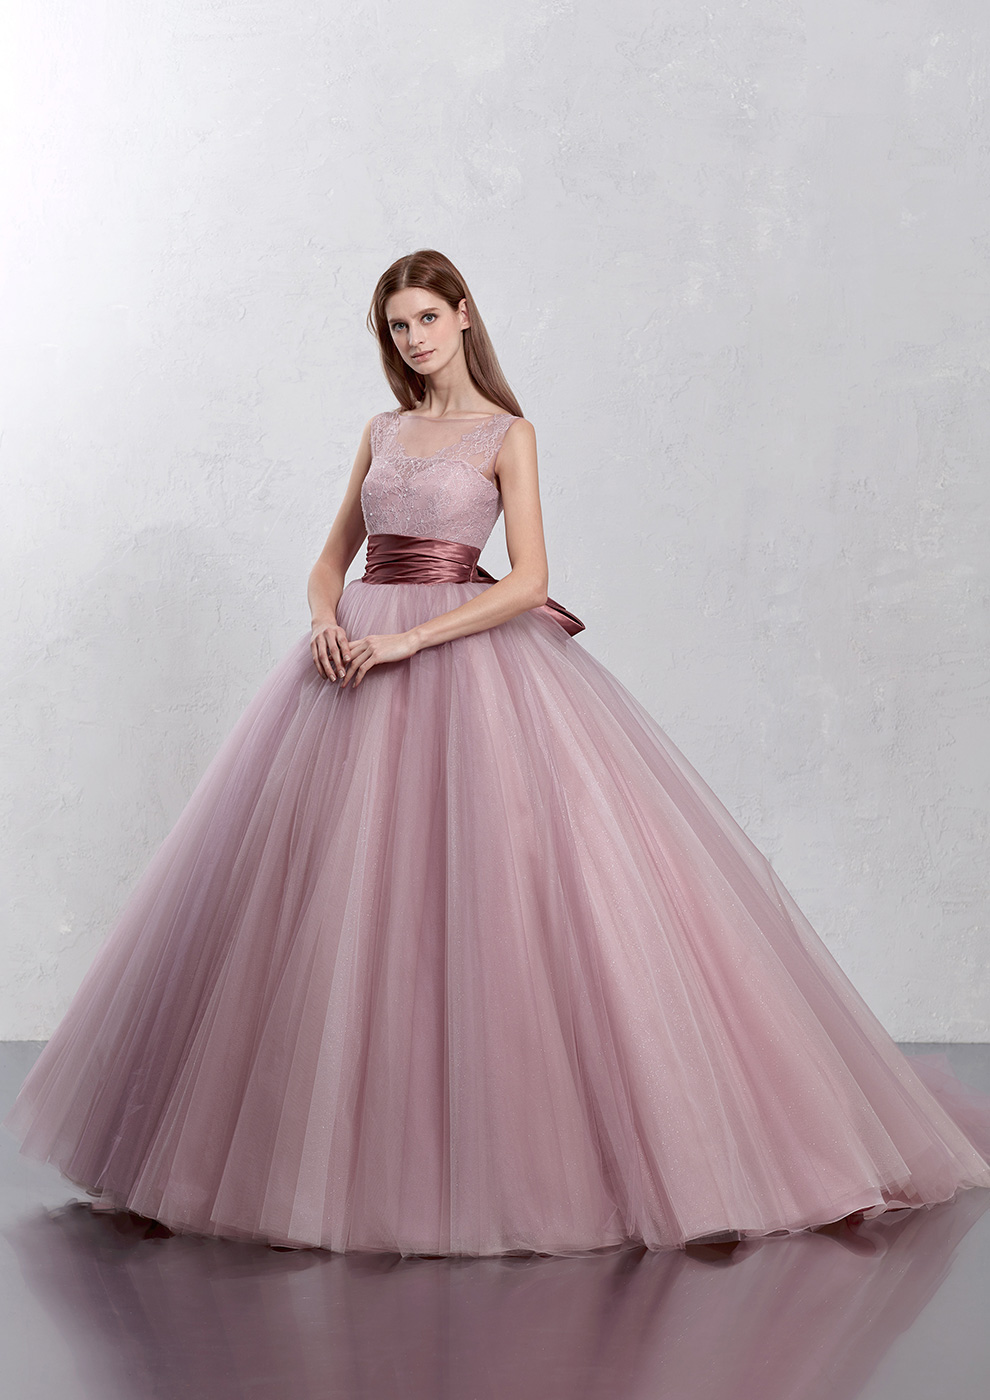 ウェディングドレス人気カラー〈女性らしさNo.1 ピンク編〉 | ウェディングドレス検索サイト | MATSUOのドレスウェディング